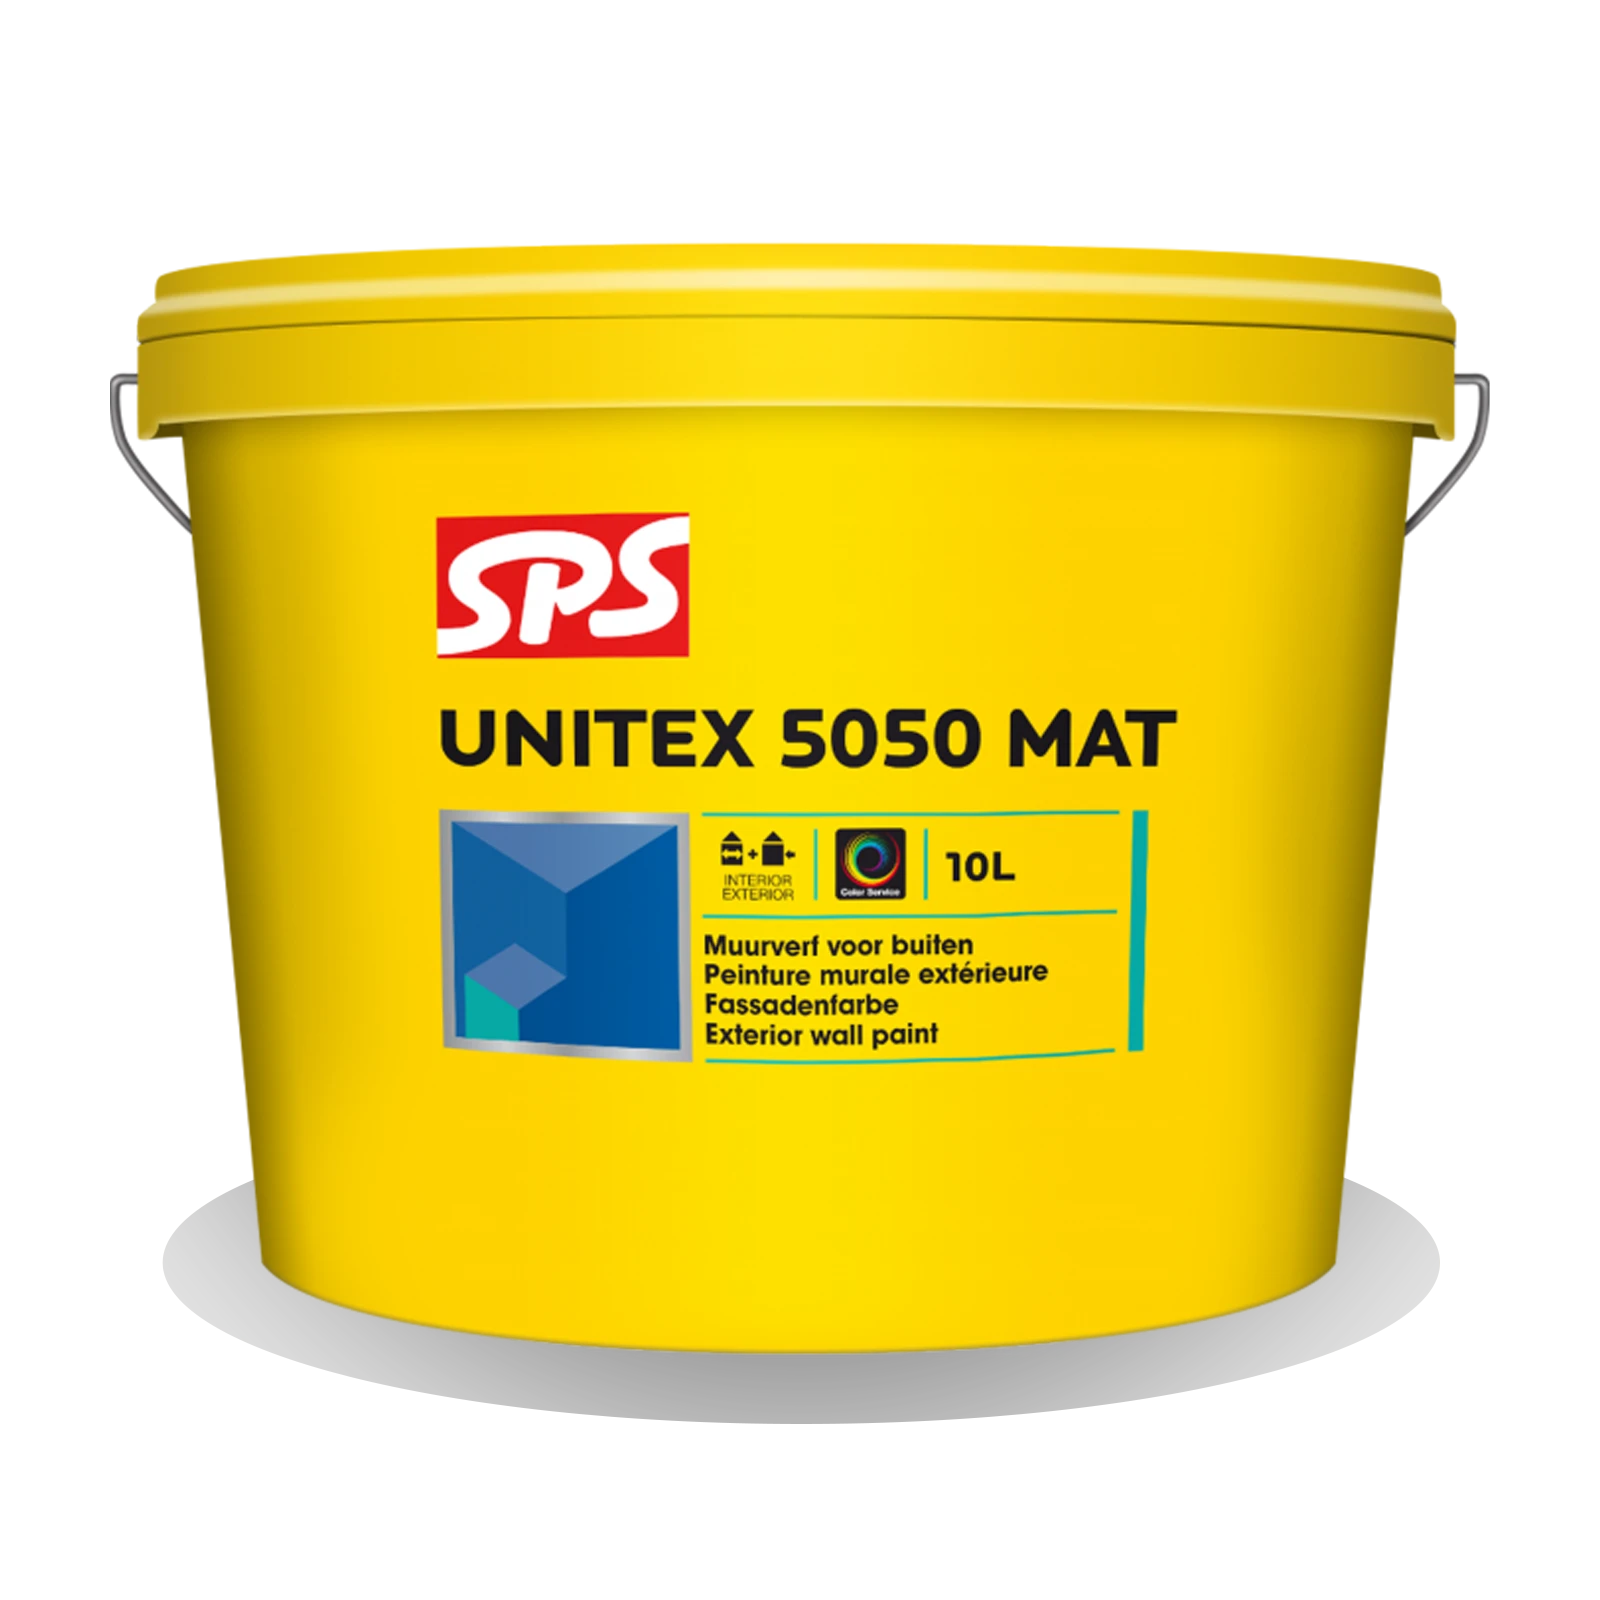 Productafbeelding SPS Unitex 5050 Mat - Muurverf Buitenkwaliteit - Muurverfen.nl